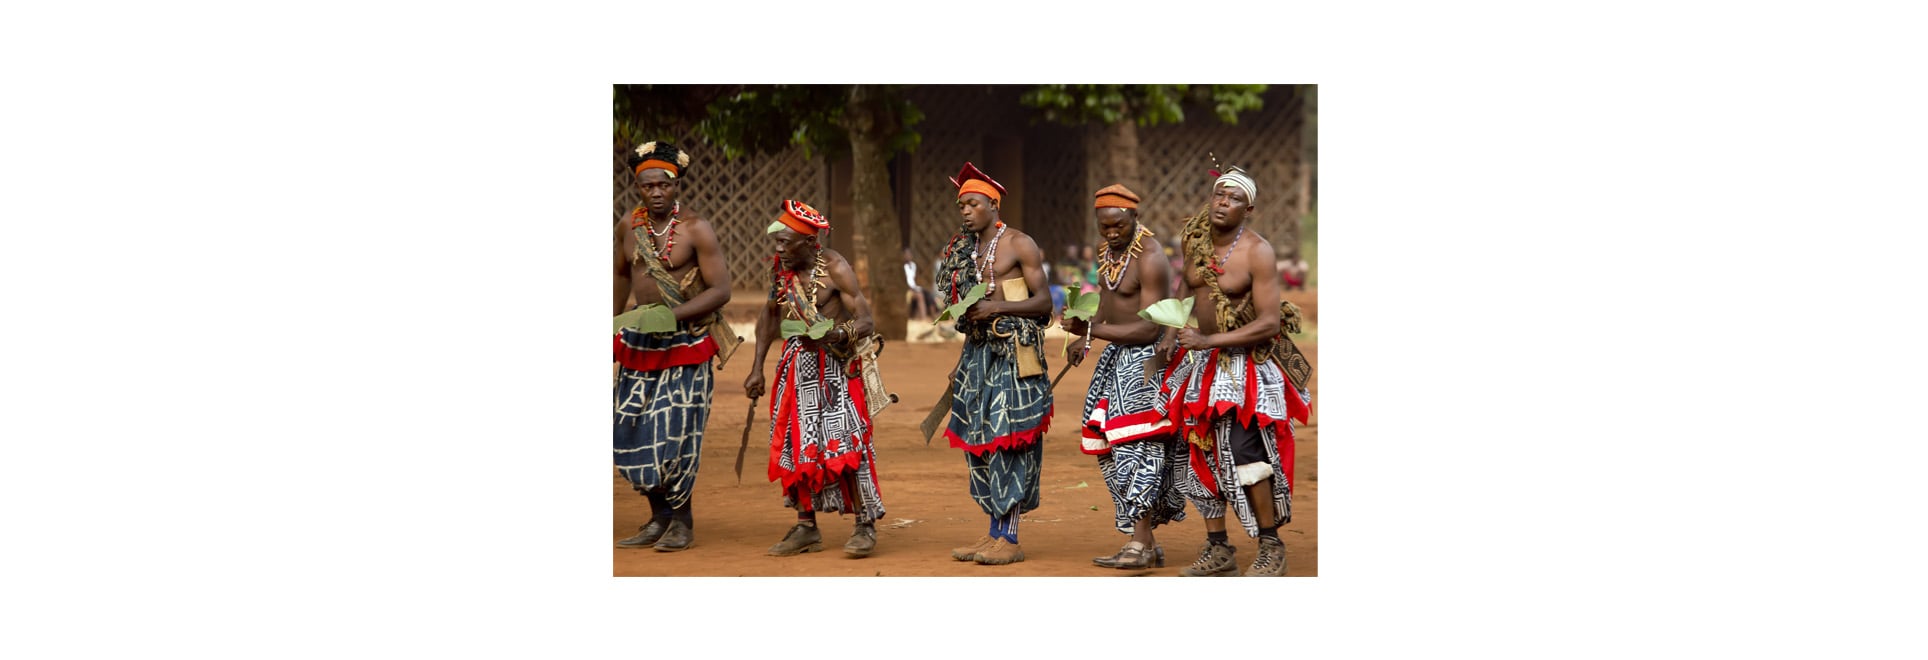 RCG-Reisen GmbH: Erleben Sie tanzende und singende Menschen in Douala, der Millionenstadt im Kamerun